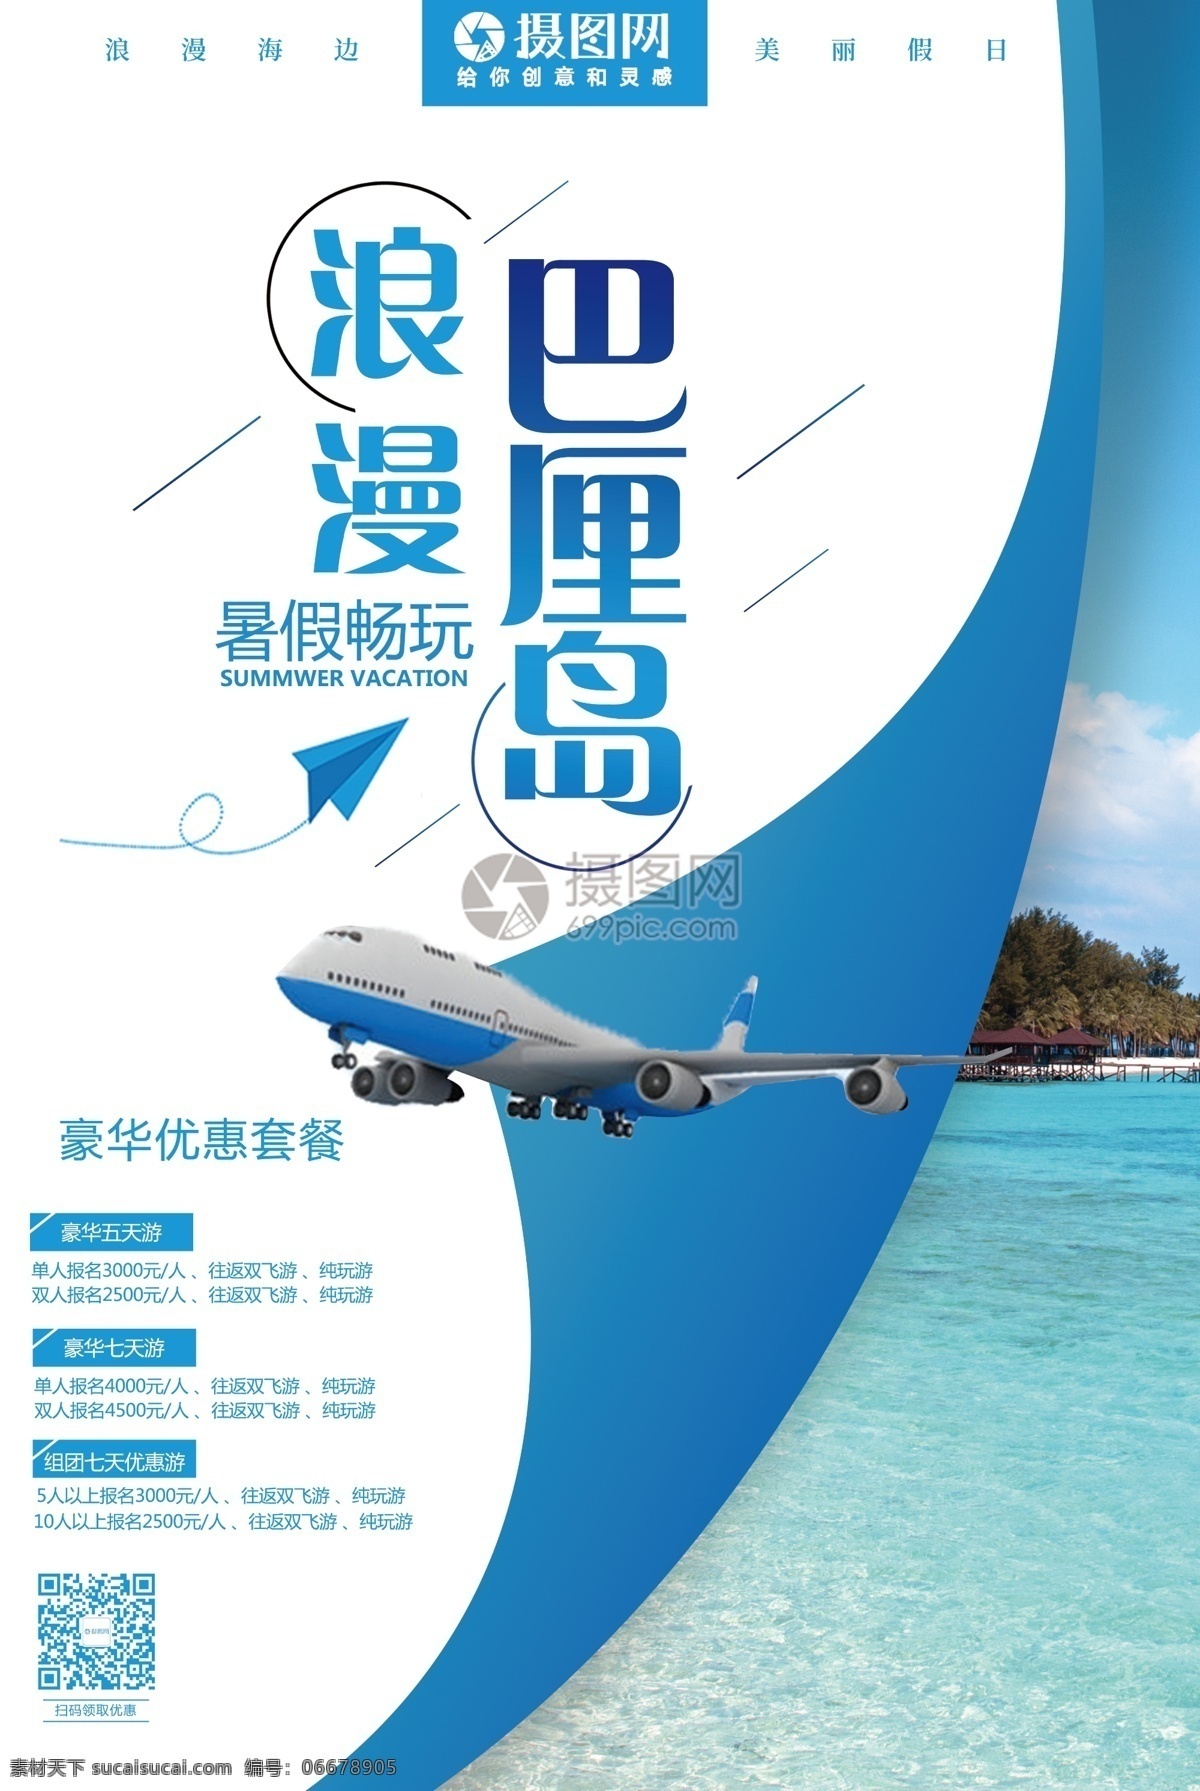 巴厘岛 旅游 海报 巴厘岛旅游 海边 浪漫旅游 旅游海报 巴厘岛海报 海边旅游 飞机 蓝色 出境游 海岛游 海